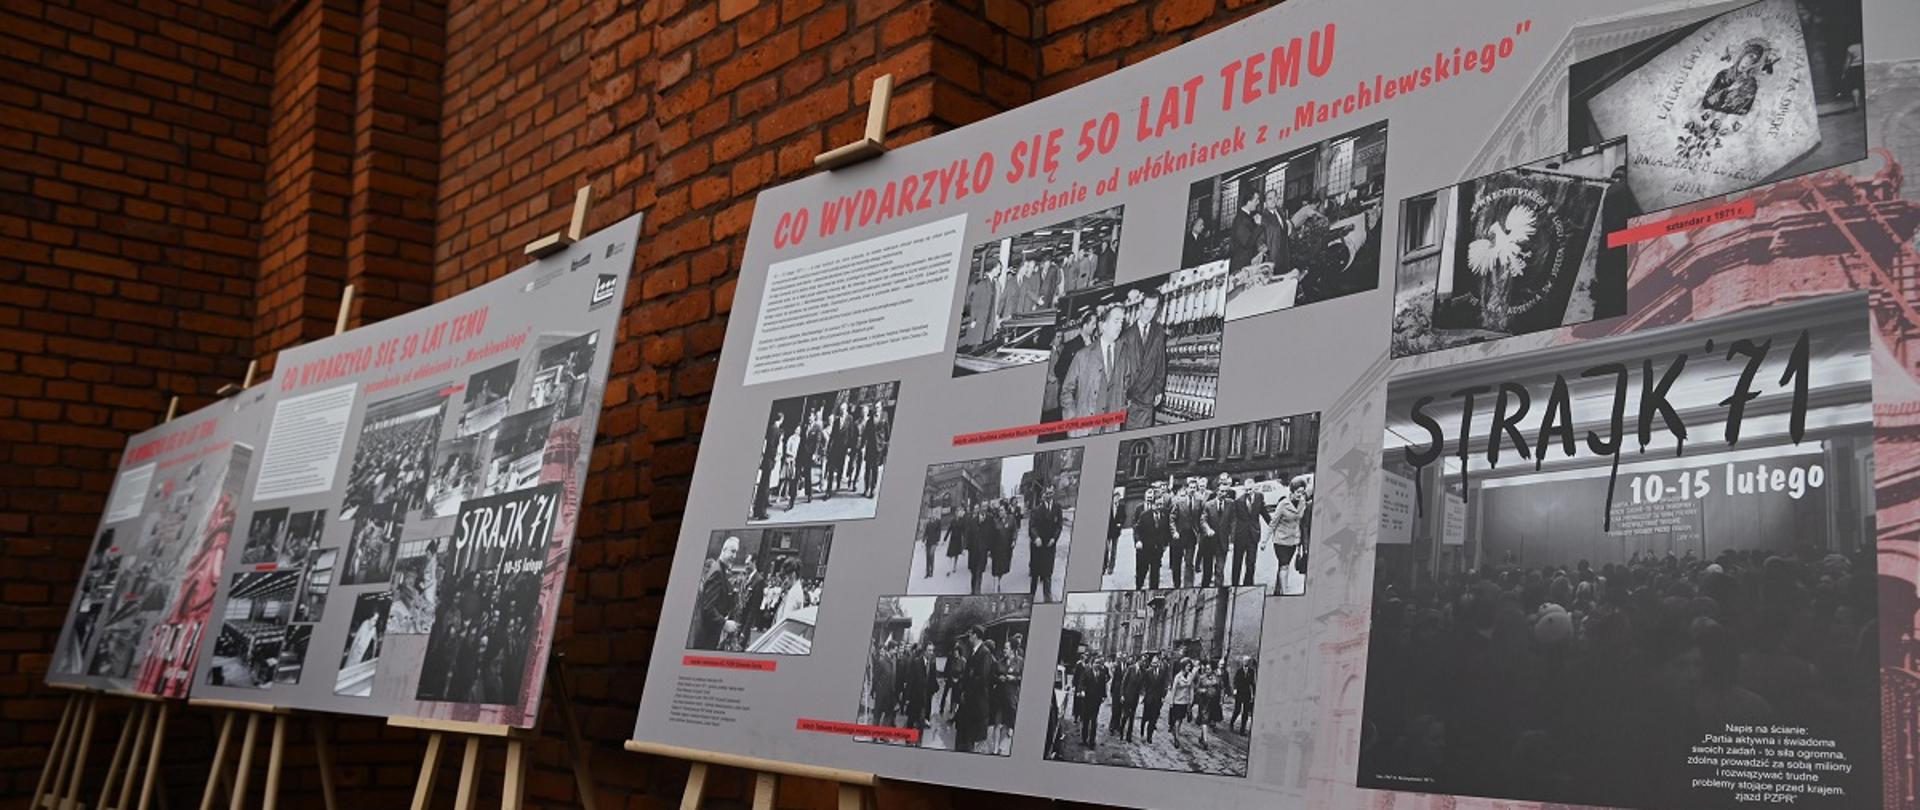 Wystawa przedstawiająca archiwalne zdjęcia z wydarzeń w Łodzi z 1971 roku